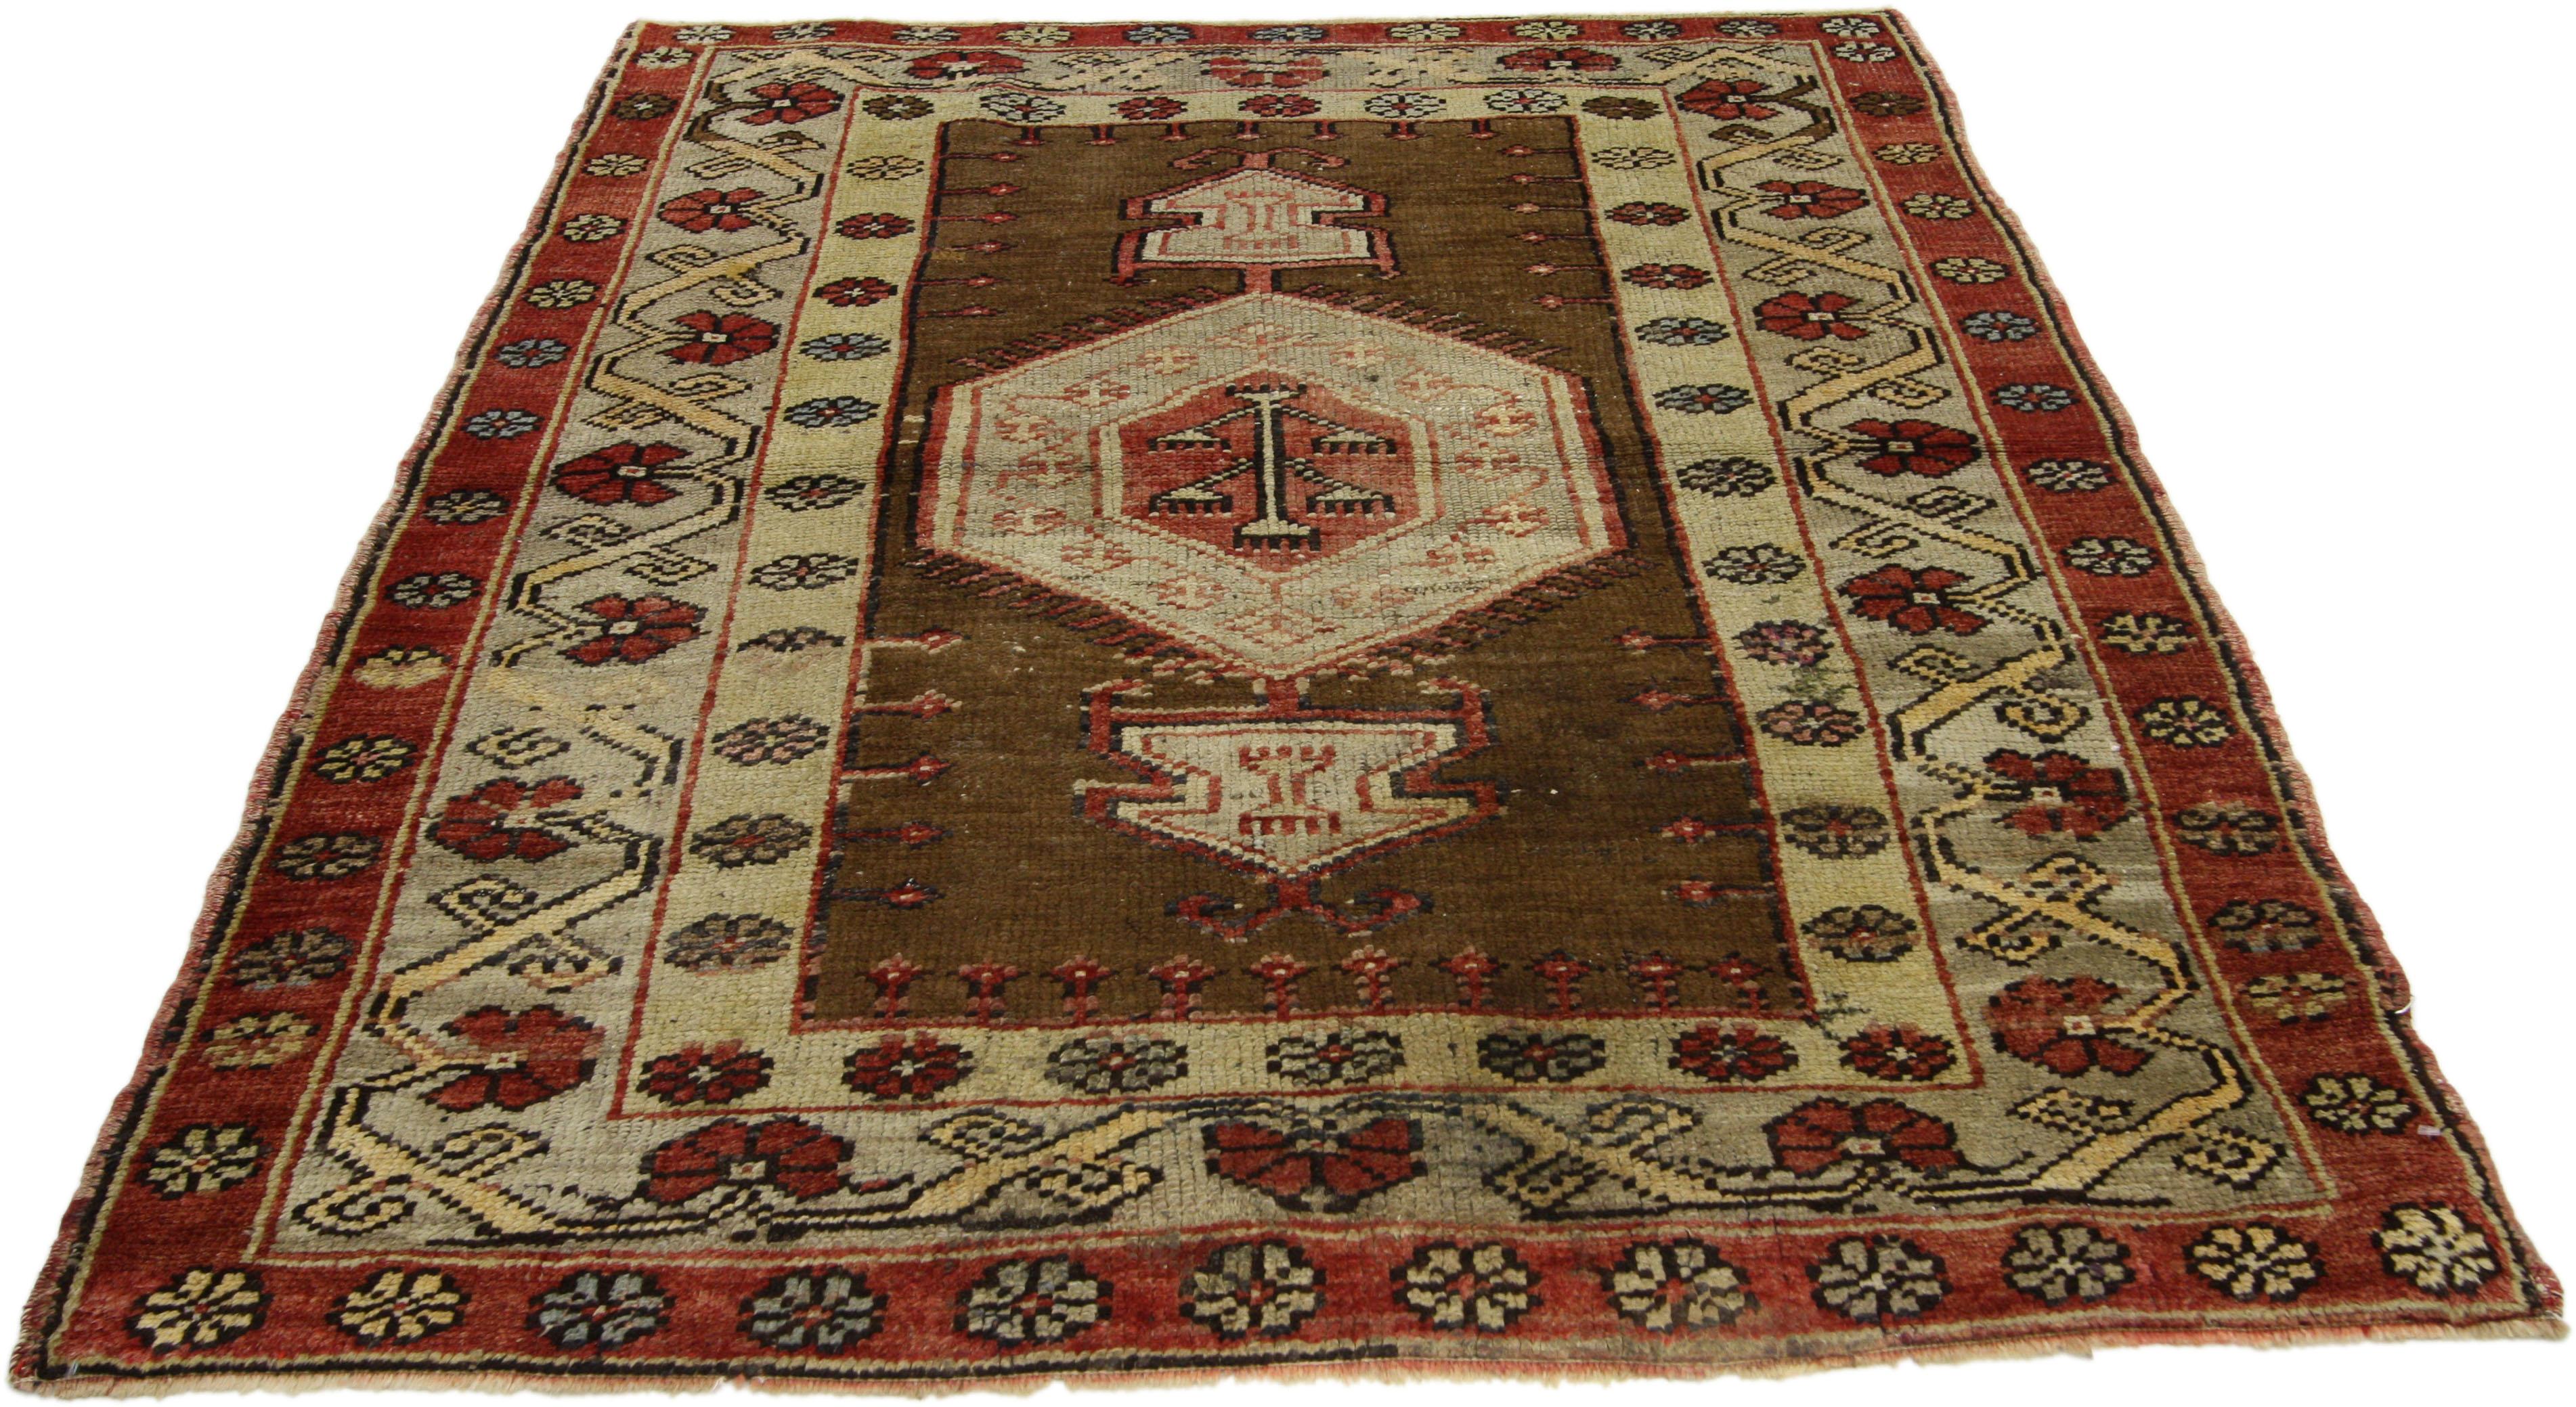 73884, tapis d'accentuation turc vintage Oushak, tapis d'entrée ou de foyer. Ce tapis turc Oushak vintage présente un style moderne et traditionnel. Imprégné de l'histoire de l'Anatolie et de couleurs raffinées, ce tapis Oushak vintage allie